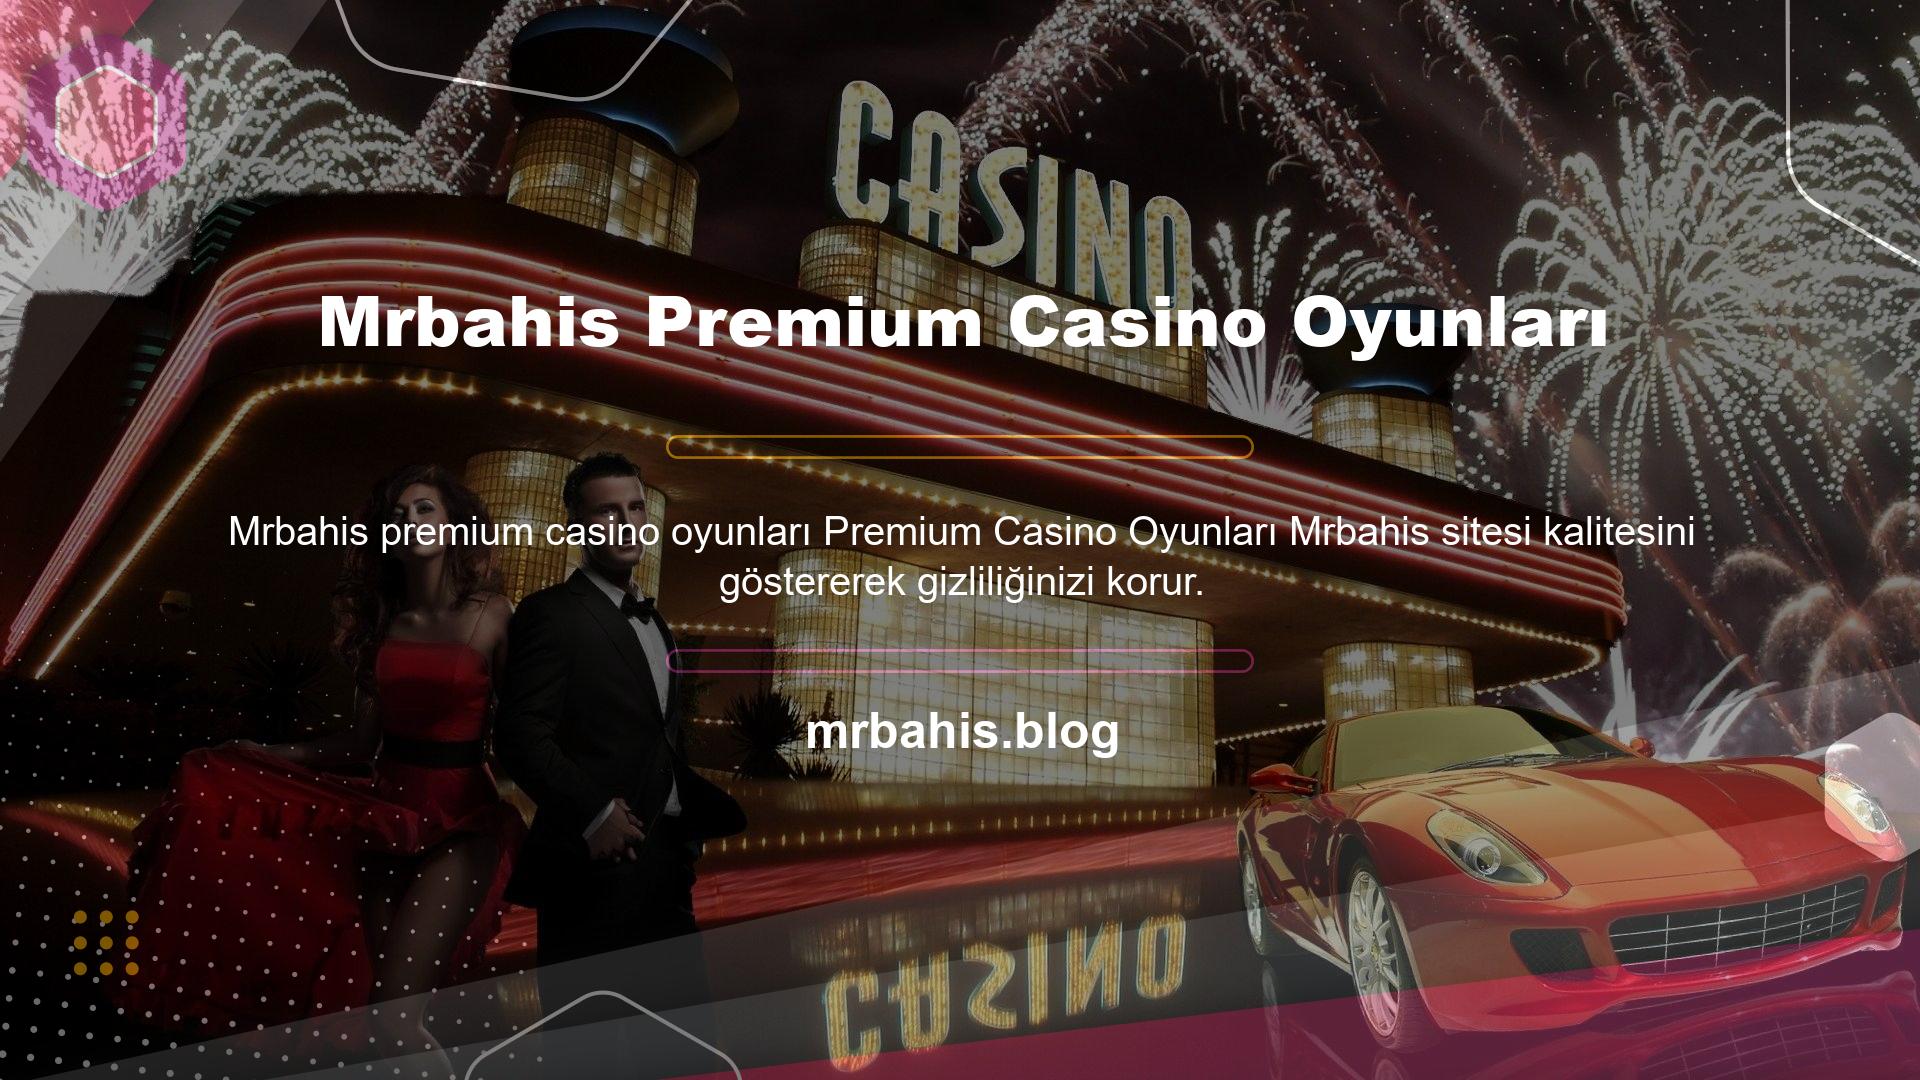 Mrbahis Premium Casino Oyunları